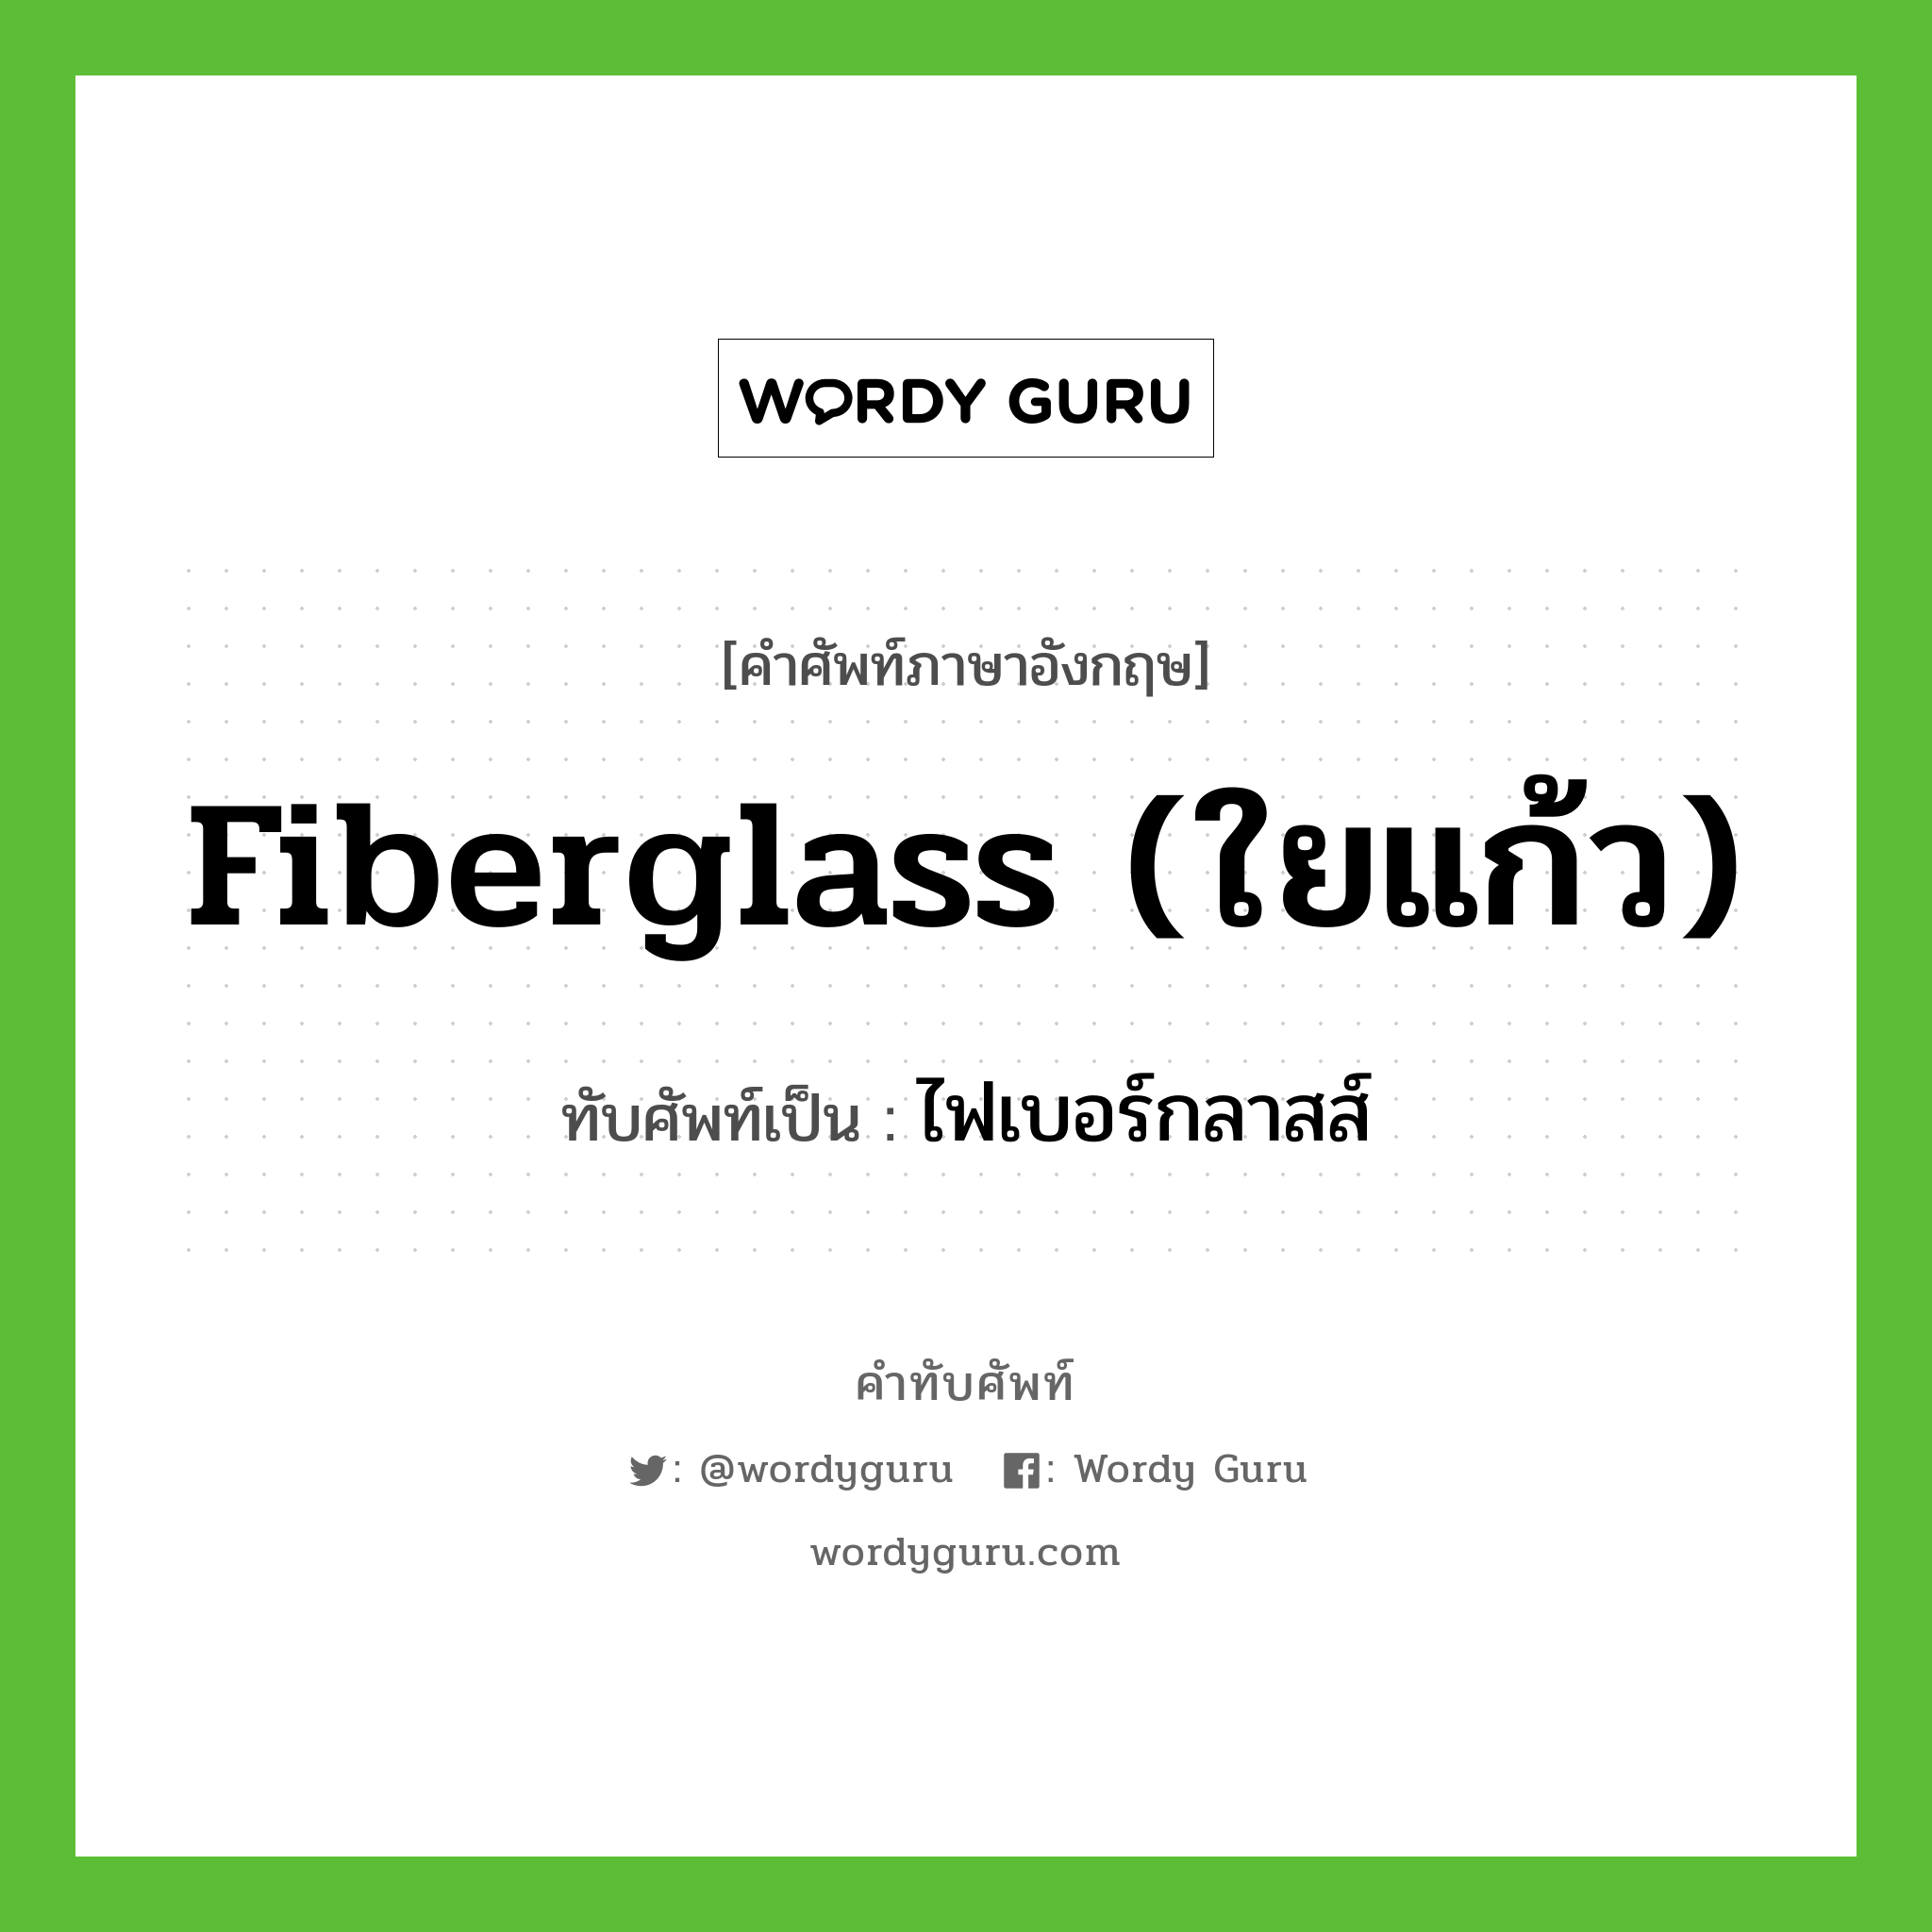 fiberglass (ใยแก้ว) เขียนเป็นคำไทยว่าอะไร?, คำศัพท์ภาษาอังกฤษ fiberglass (ใยแก้ว) ทับศัพท์เป็น ไฟเบอร์กลาสส์